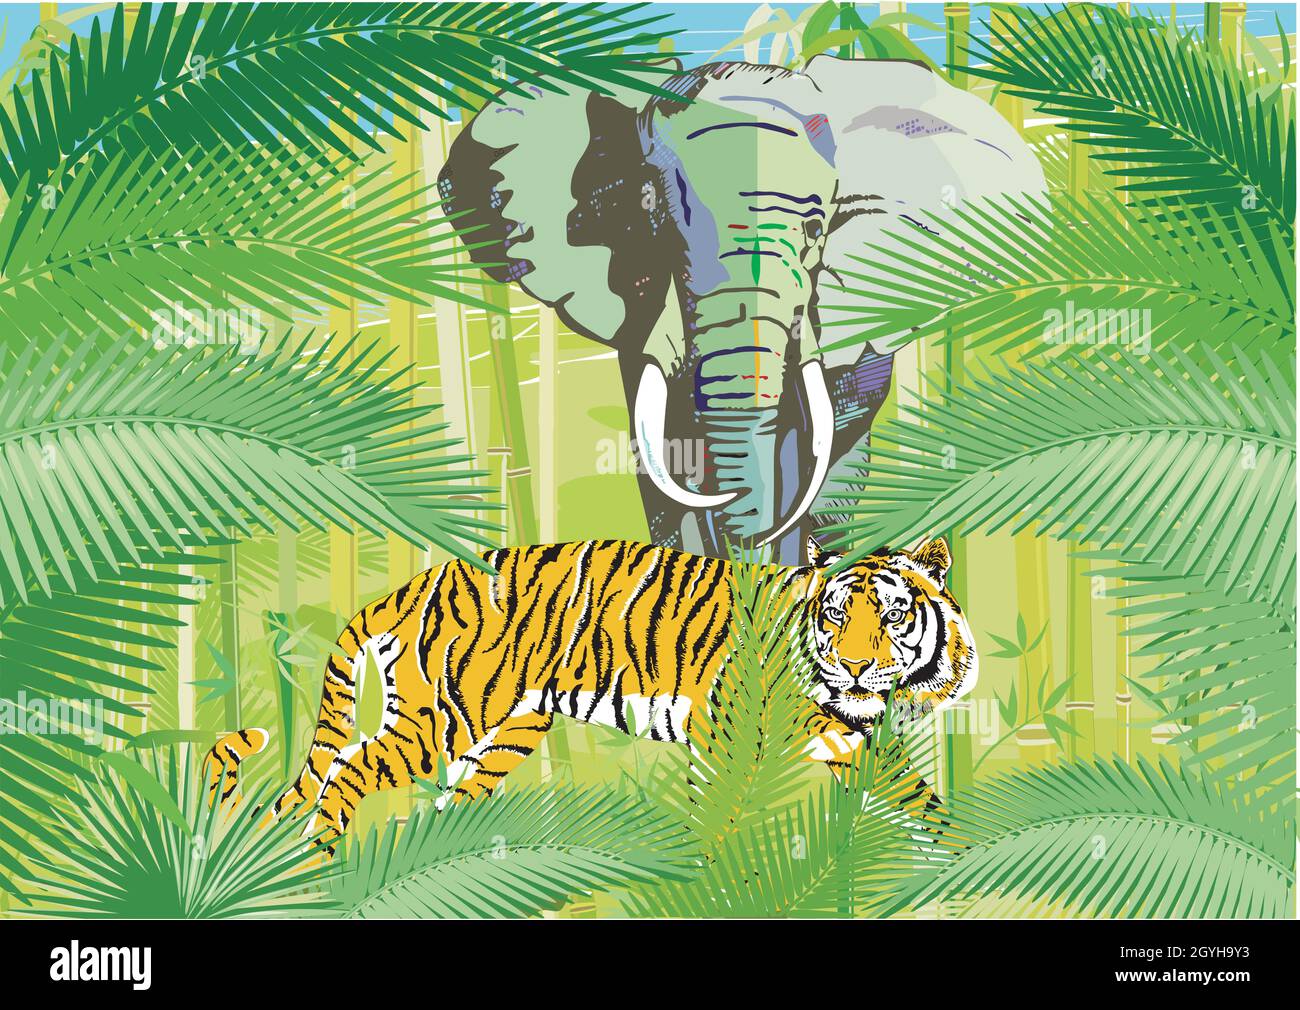 Tropischer Dschungel mit Elefant und Tiger, Illustration Stock Vektor